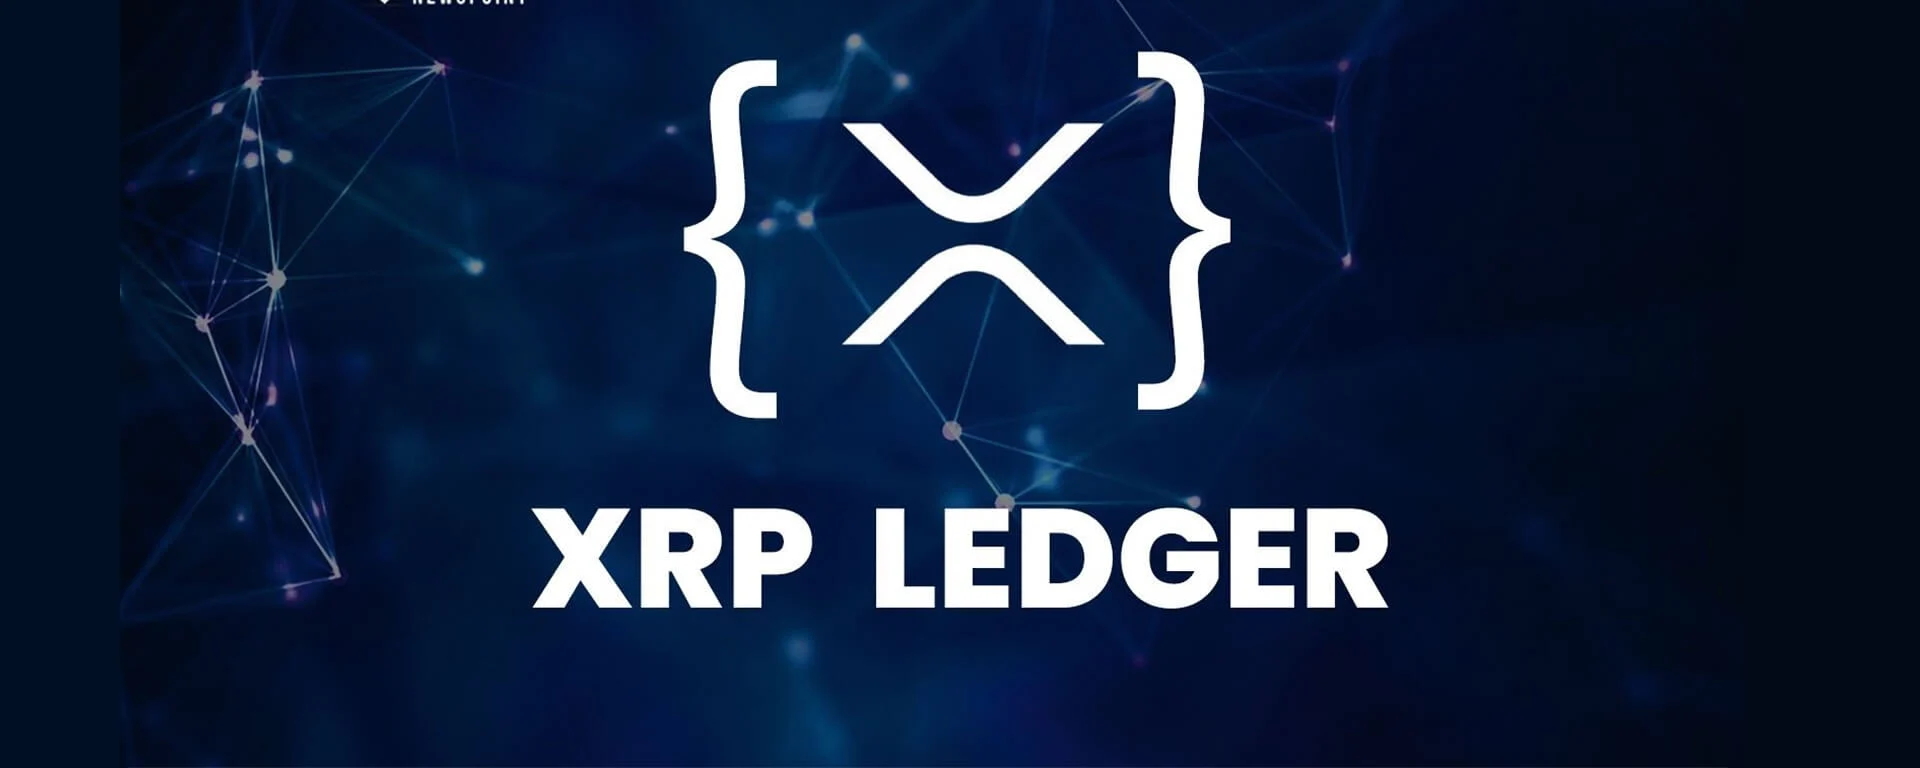 Xrp Ledger Foundation